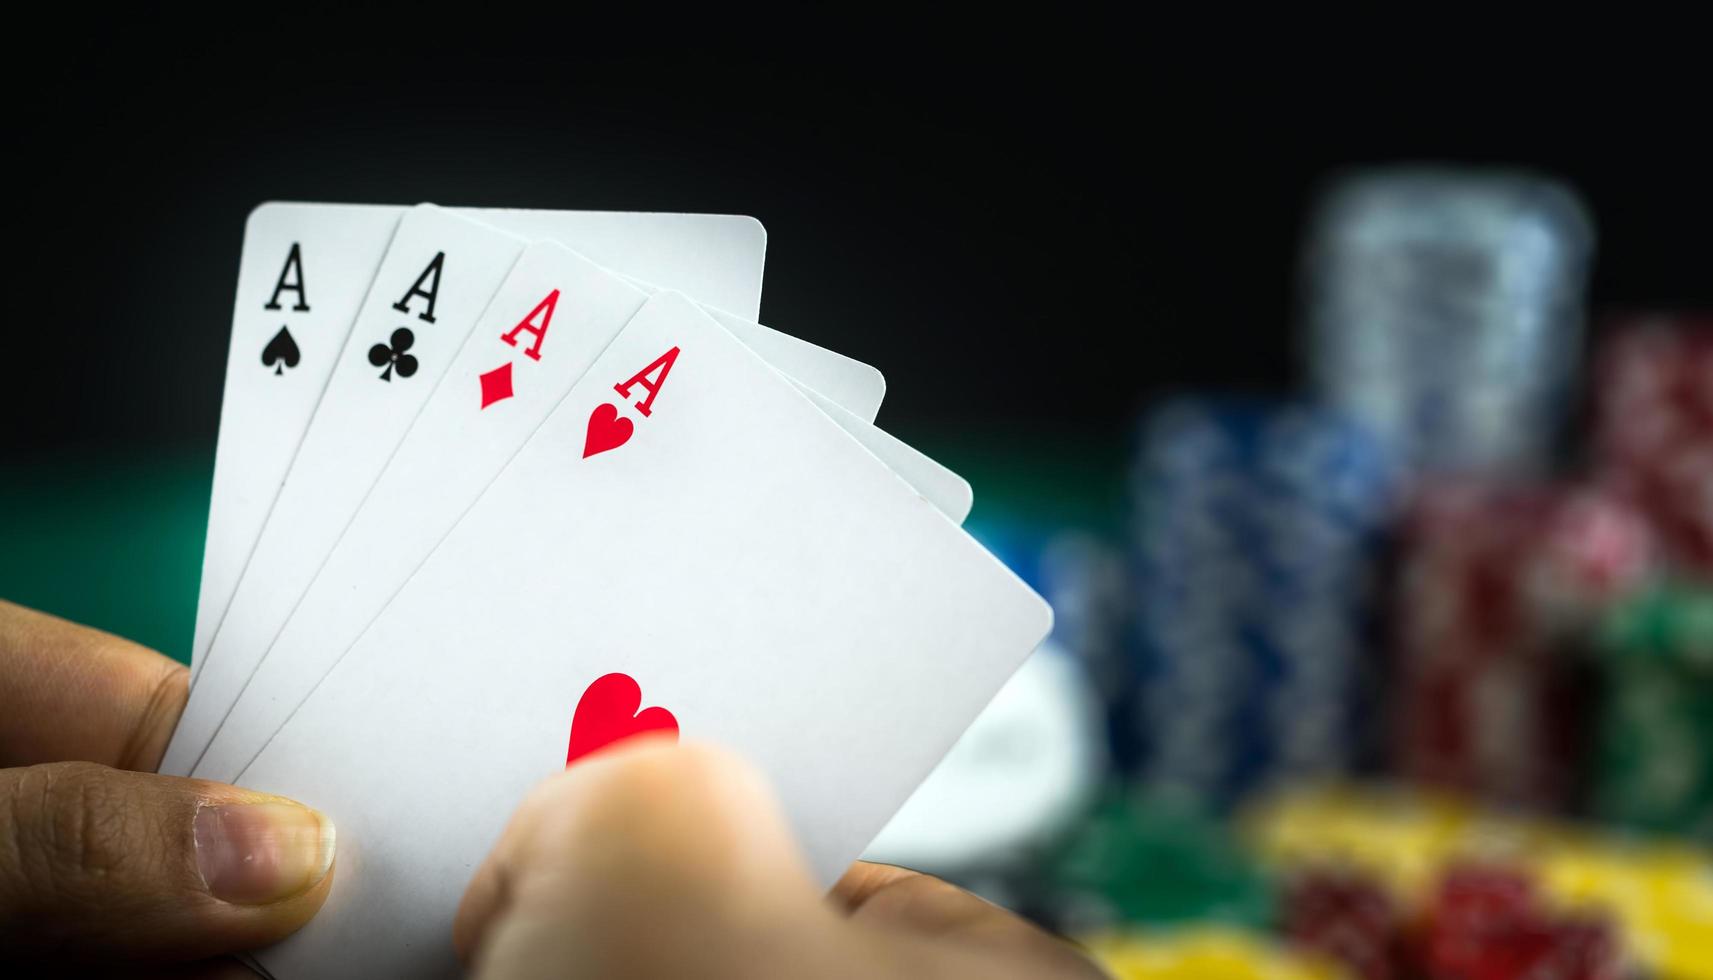 Glücksspiel Poker Blackjack Karten Hand gezeigt und Würfel foto